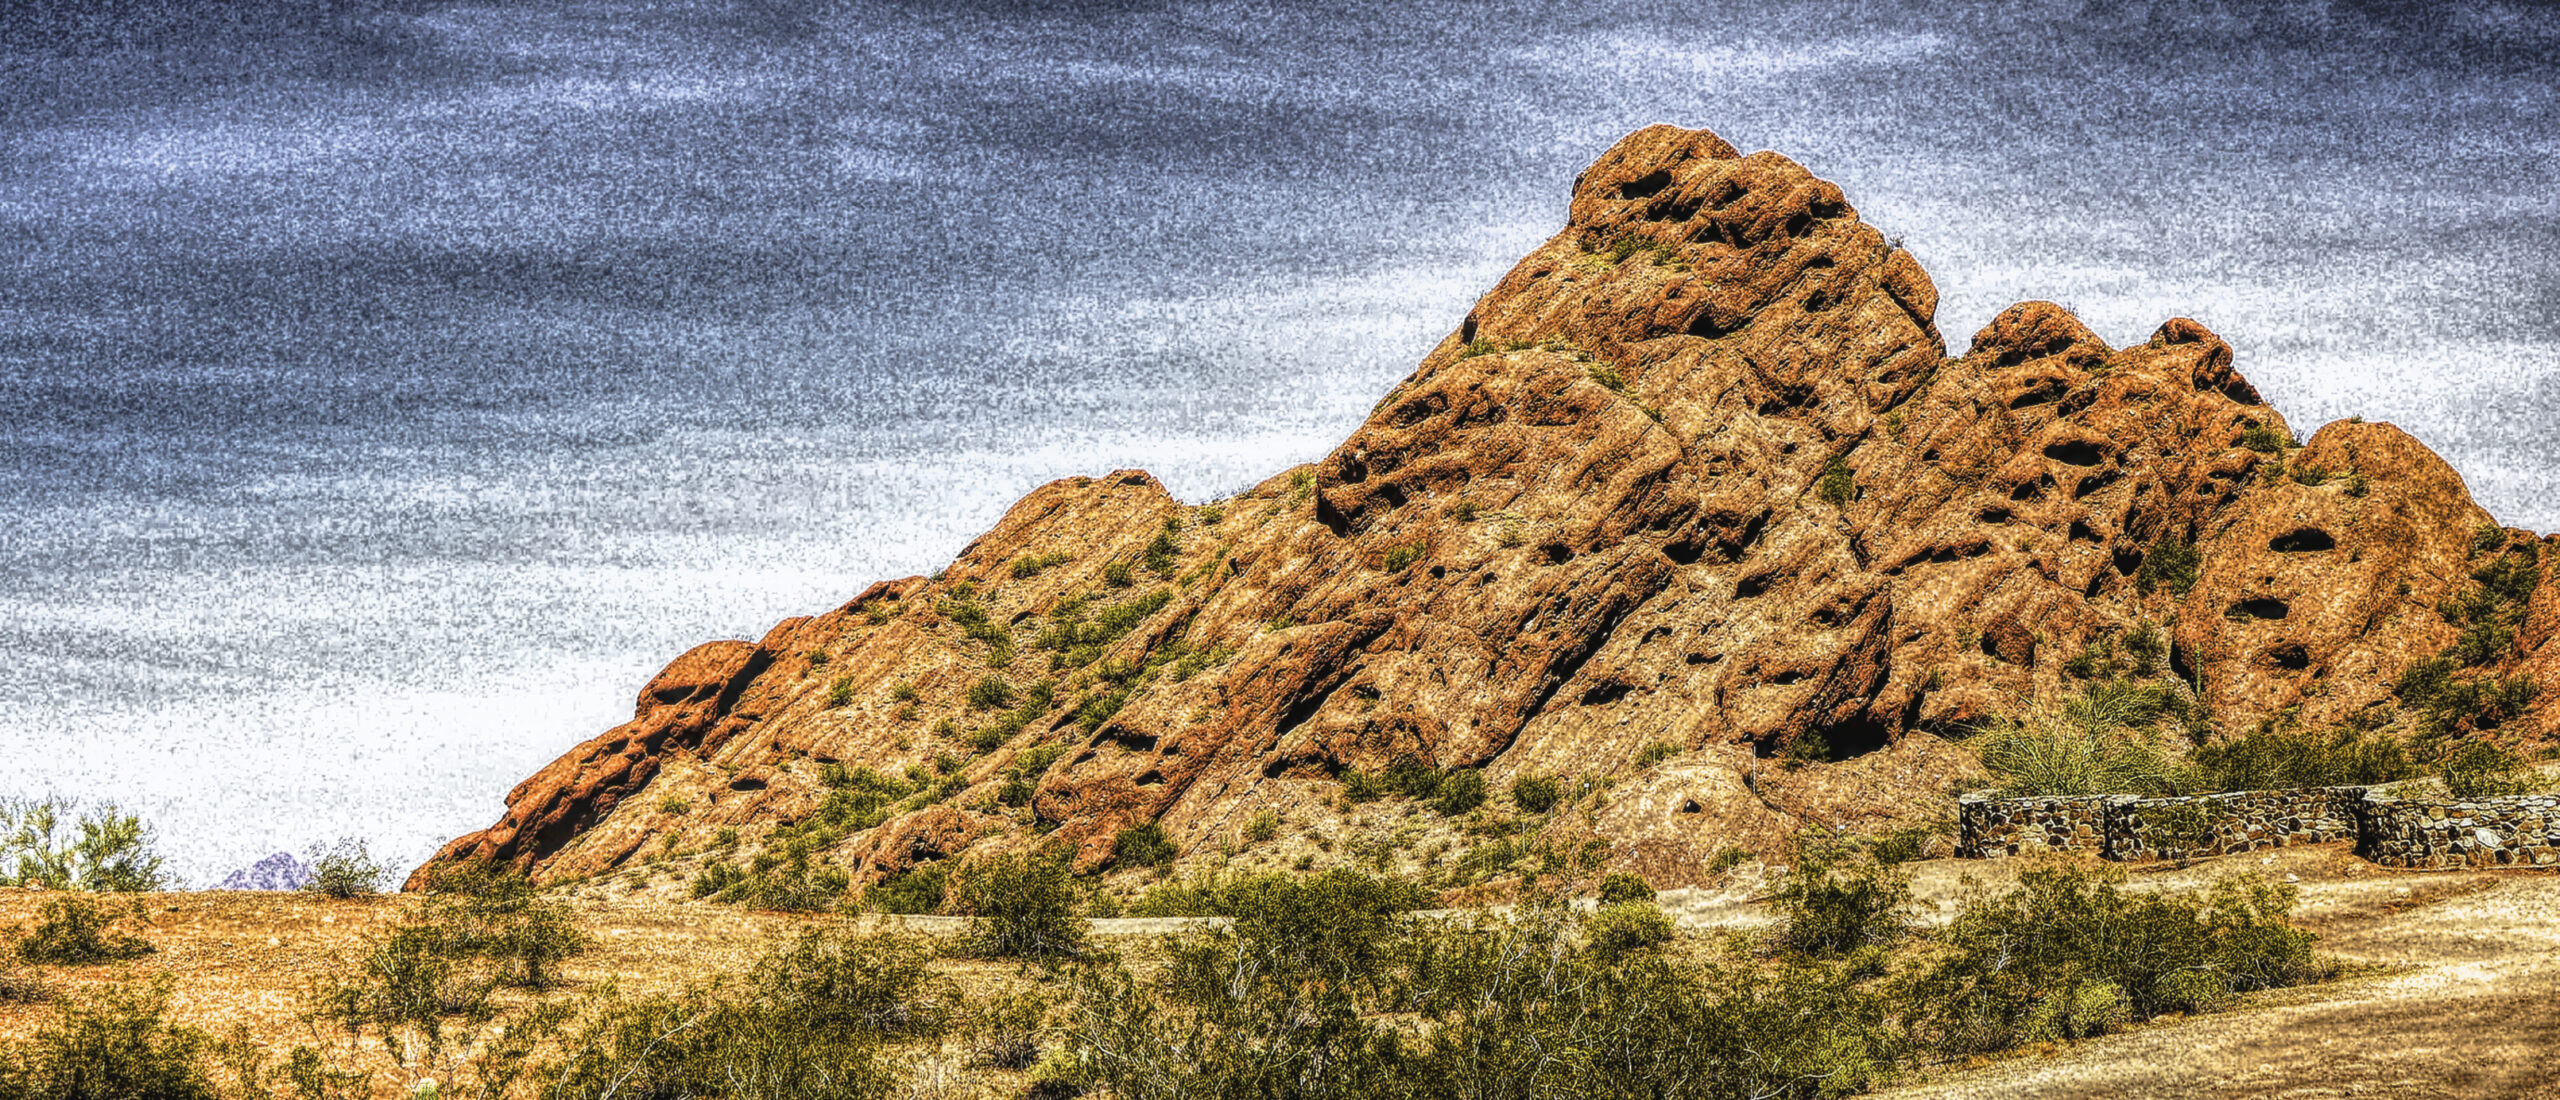 Red rock hill near Phoenix, Arizona